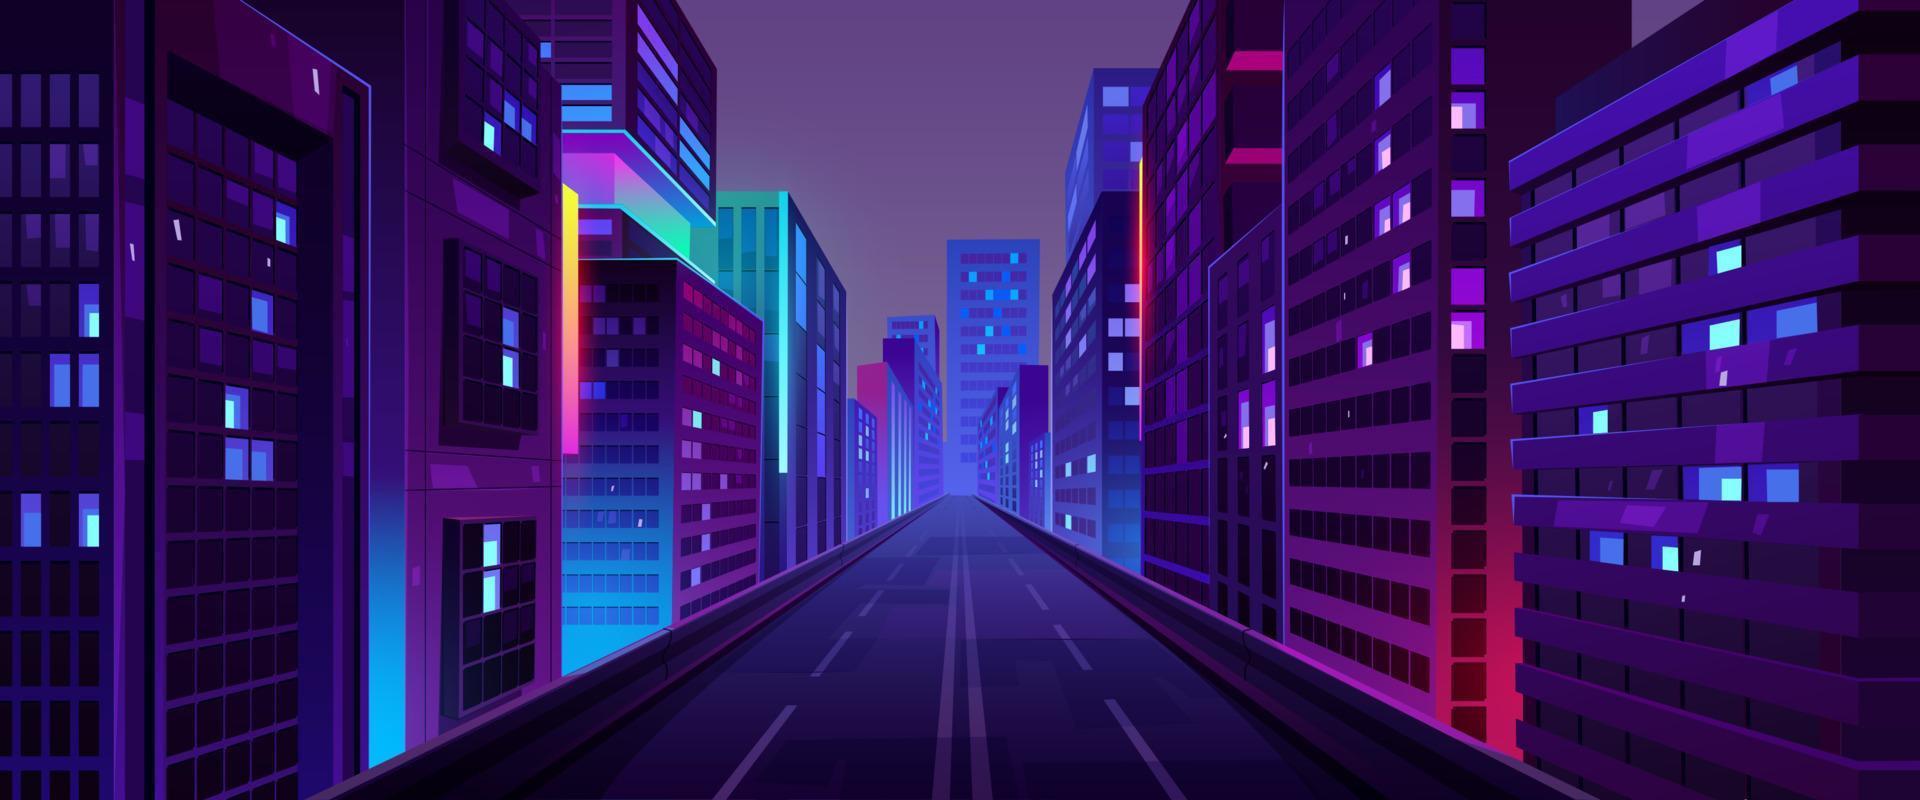 stad nacht straat, weg en huizen met neon licht vector